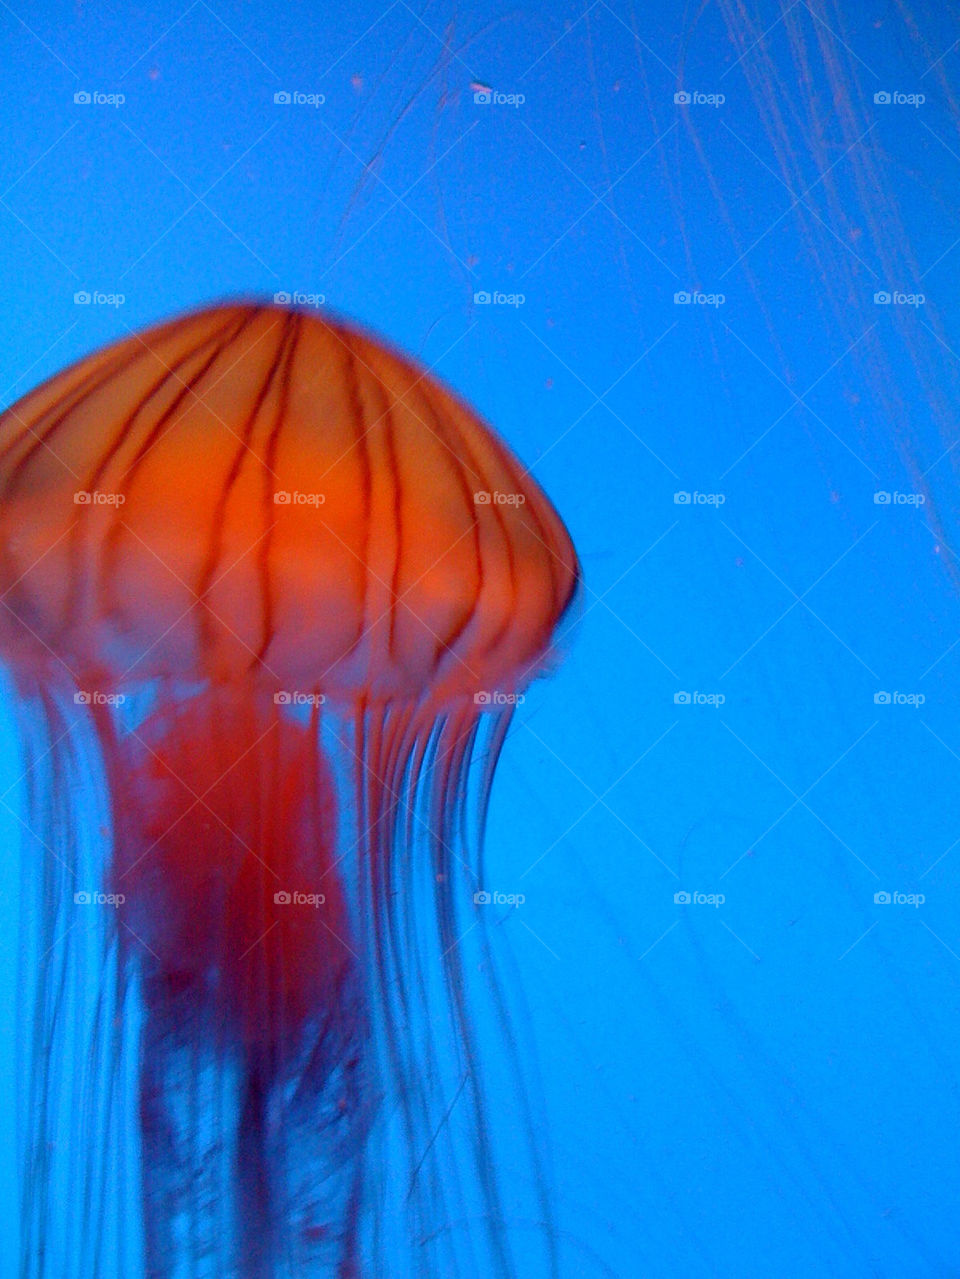 china jellyfish by tplips01